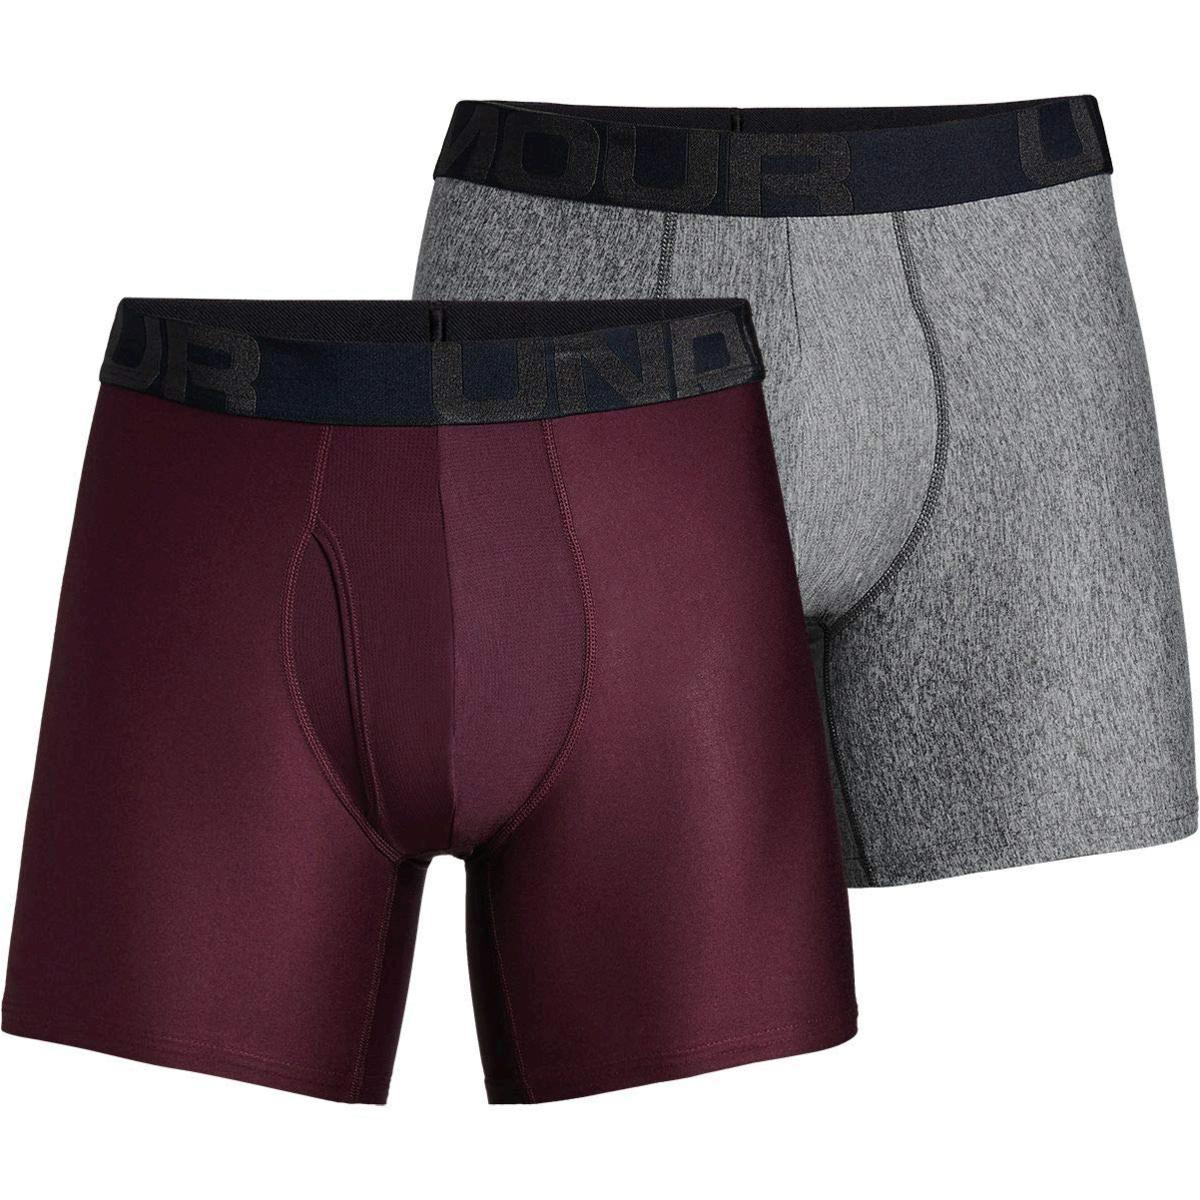 Under Armour Tech 6in Underwear - 2-Pack - Men's Dark, Red, Size X ...